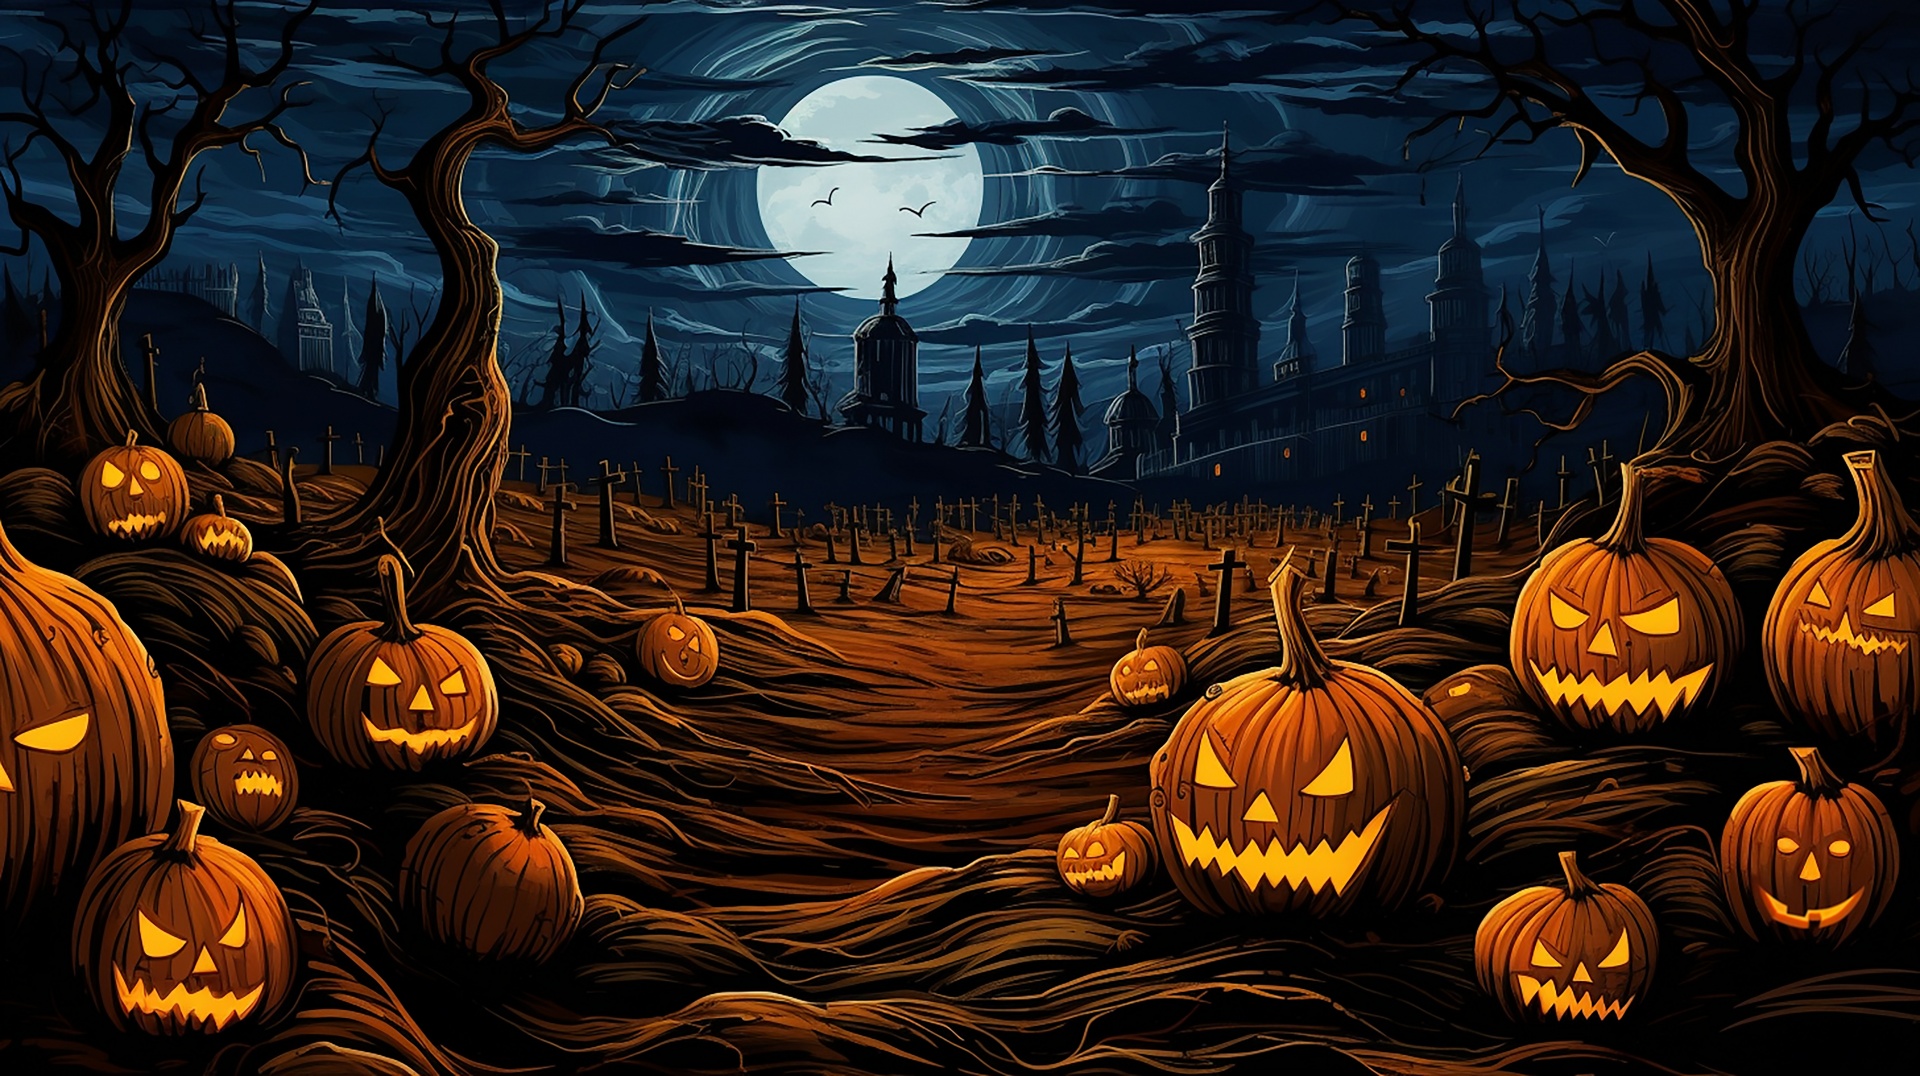 Halloween Pumpkins Night Illustration Free Stock Photo - Public Domain ...